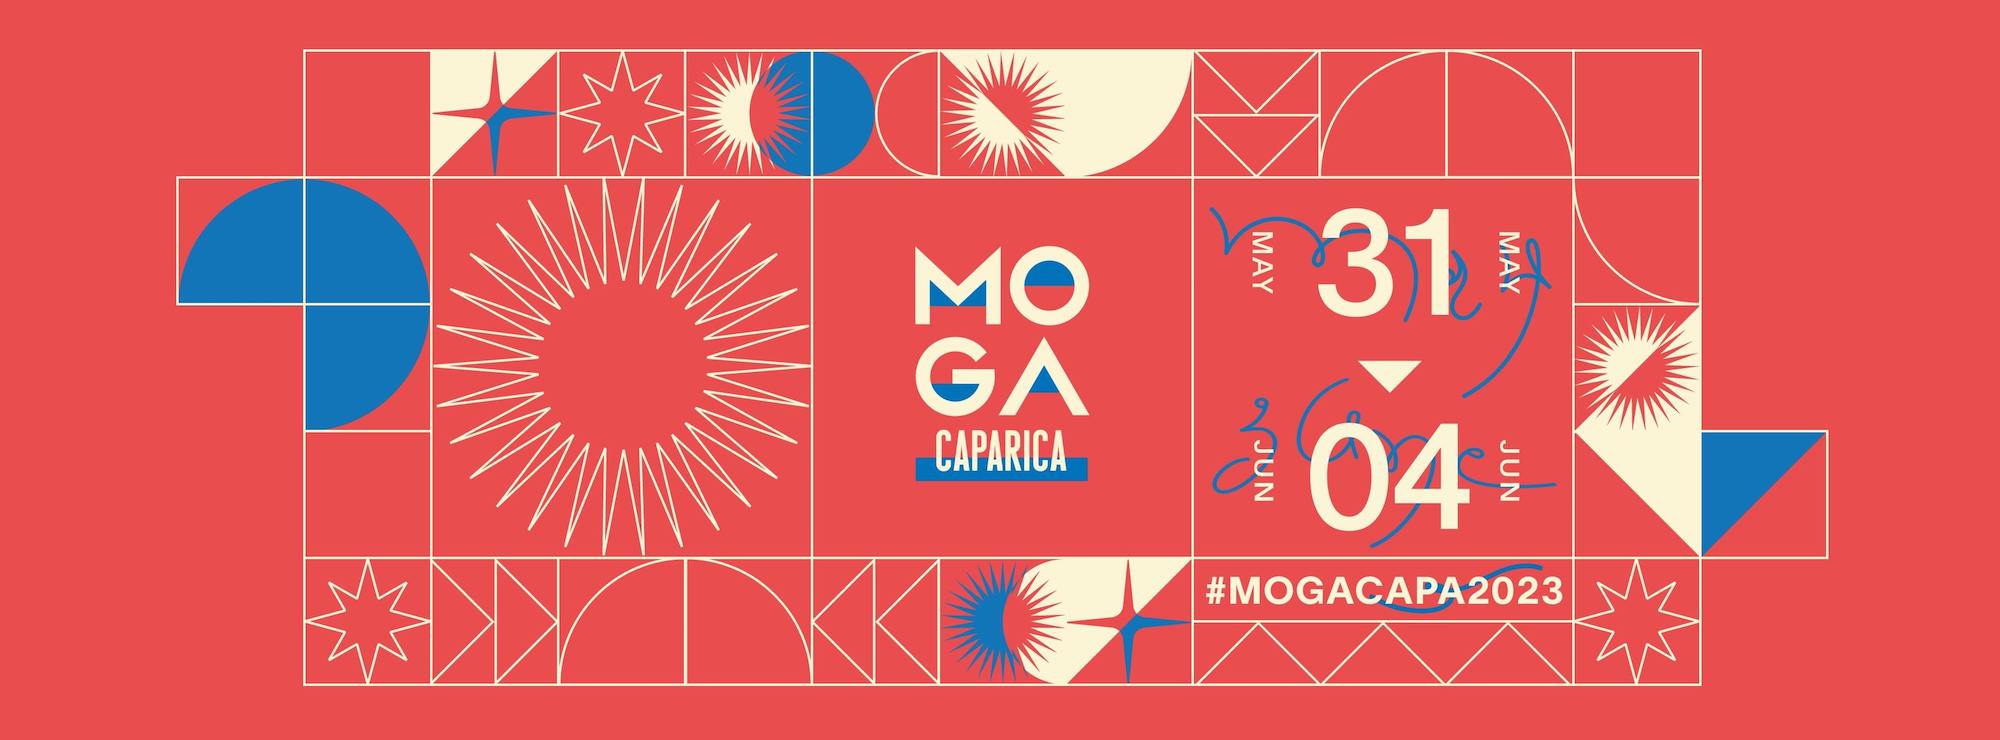 You are currently viewing MOGA Caparica revient au Portugal du 31 mai au 4 juin 2023 pour une troisième édition avec Bradley Zero, Shanti Celeste, Danilo Plessow (MCDE), Heidi Lawden & Lovefingers, Gerd Janson, Kerri Chandler, Sadar Bahar, Hunee et plus encore